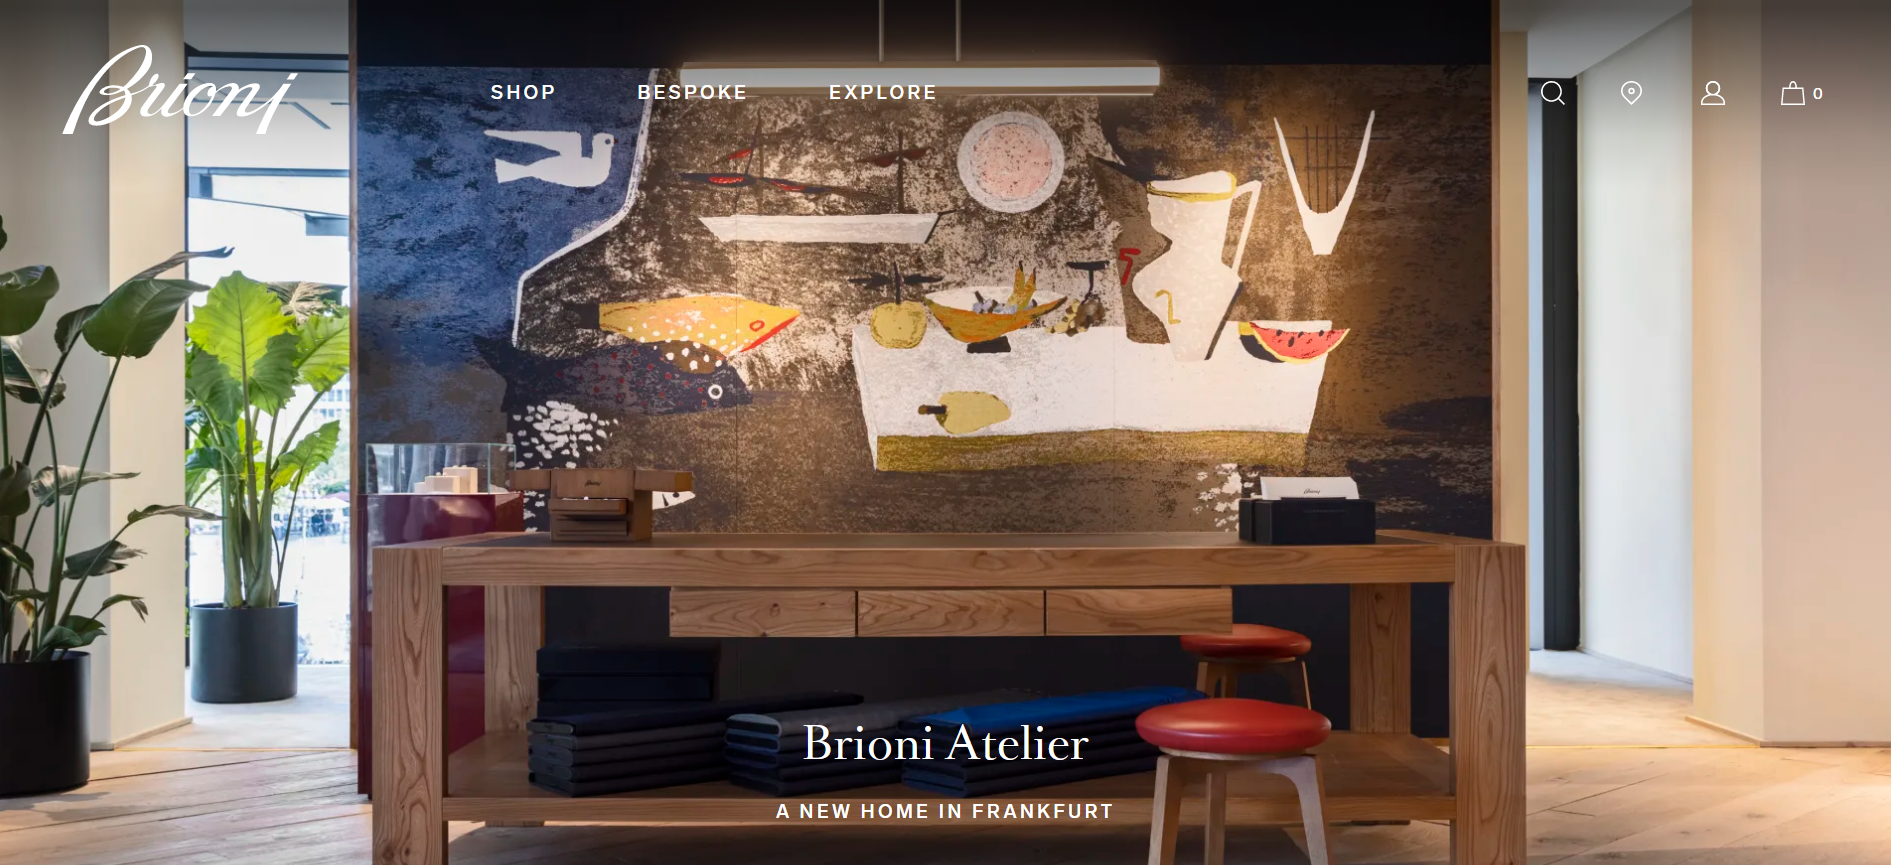 奢侈男装品牌 Brioni 在德国开设首家高级工坊，提供一对一定制服务